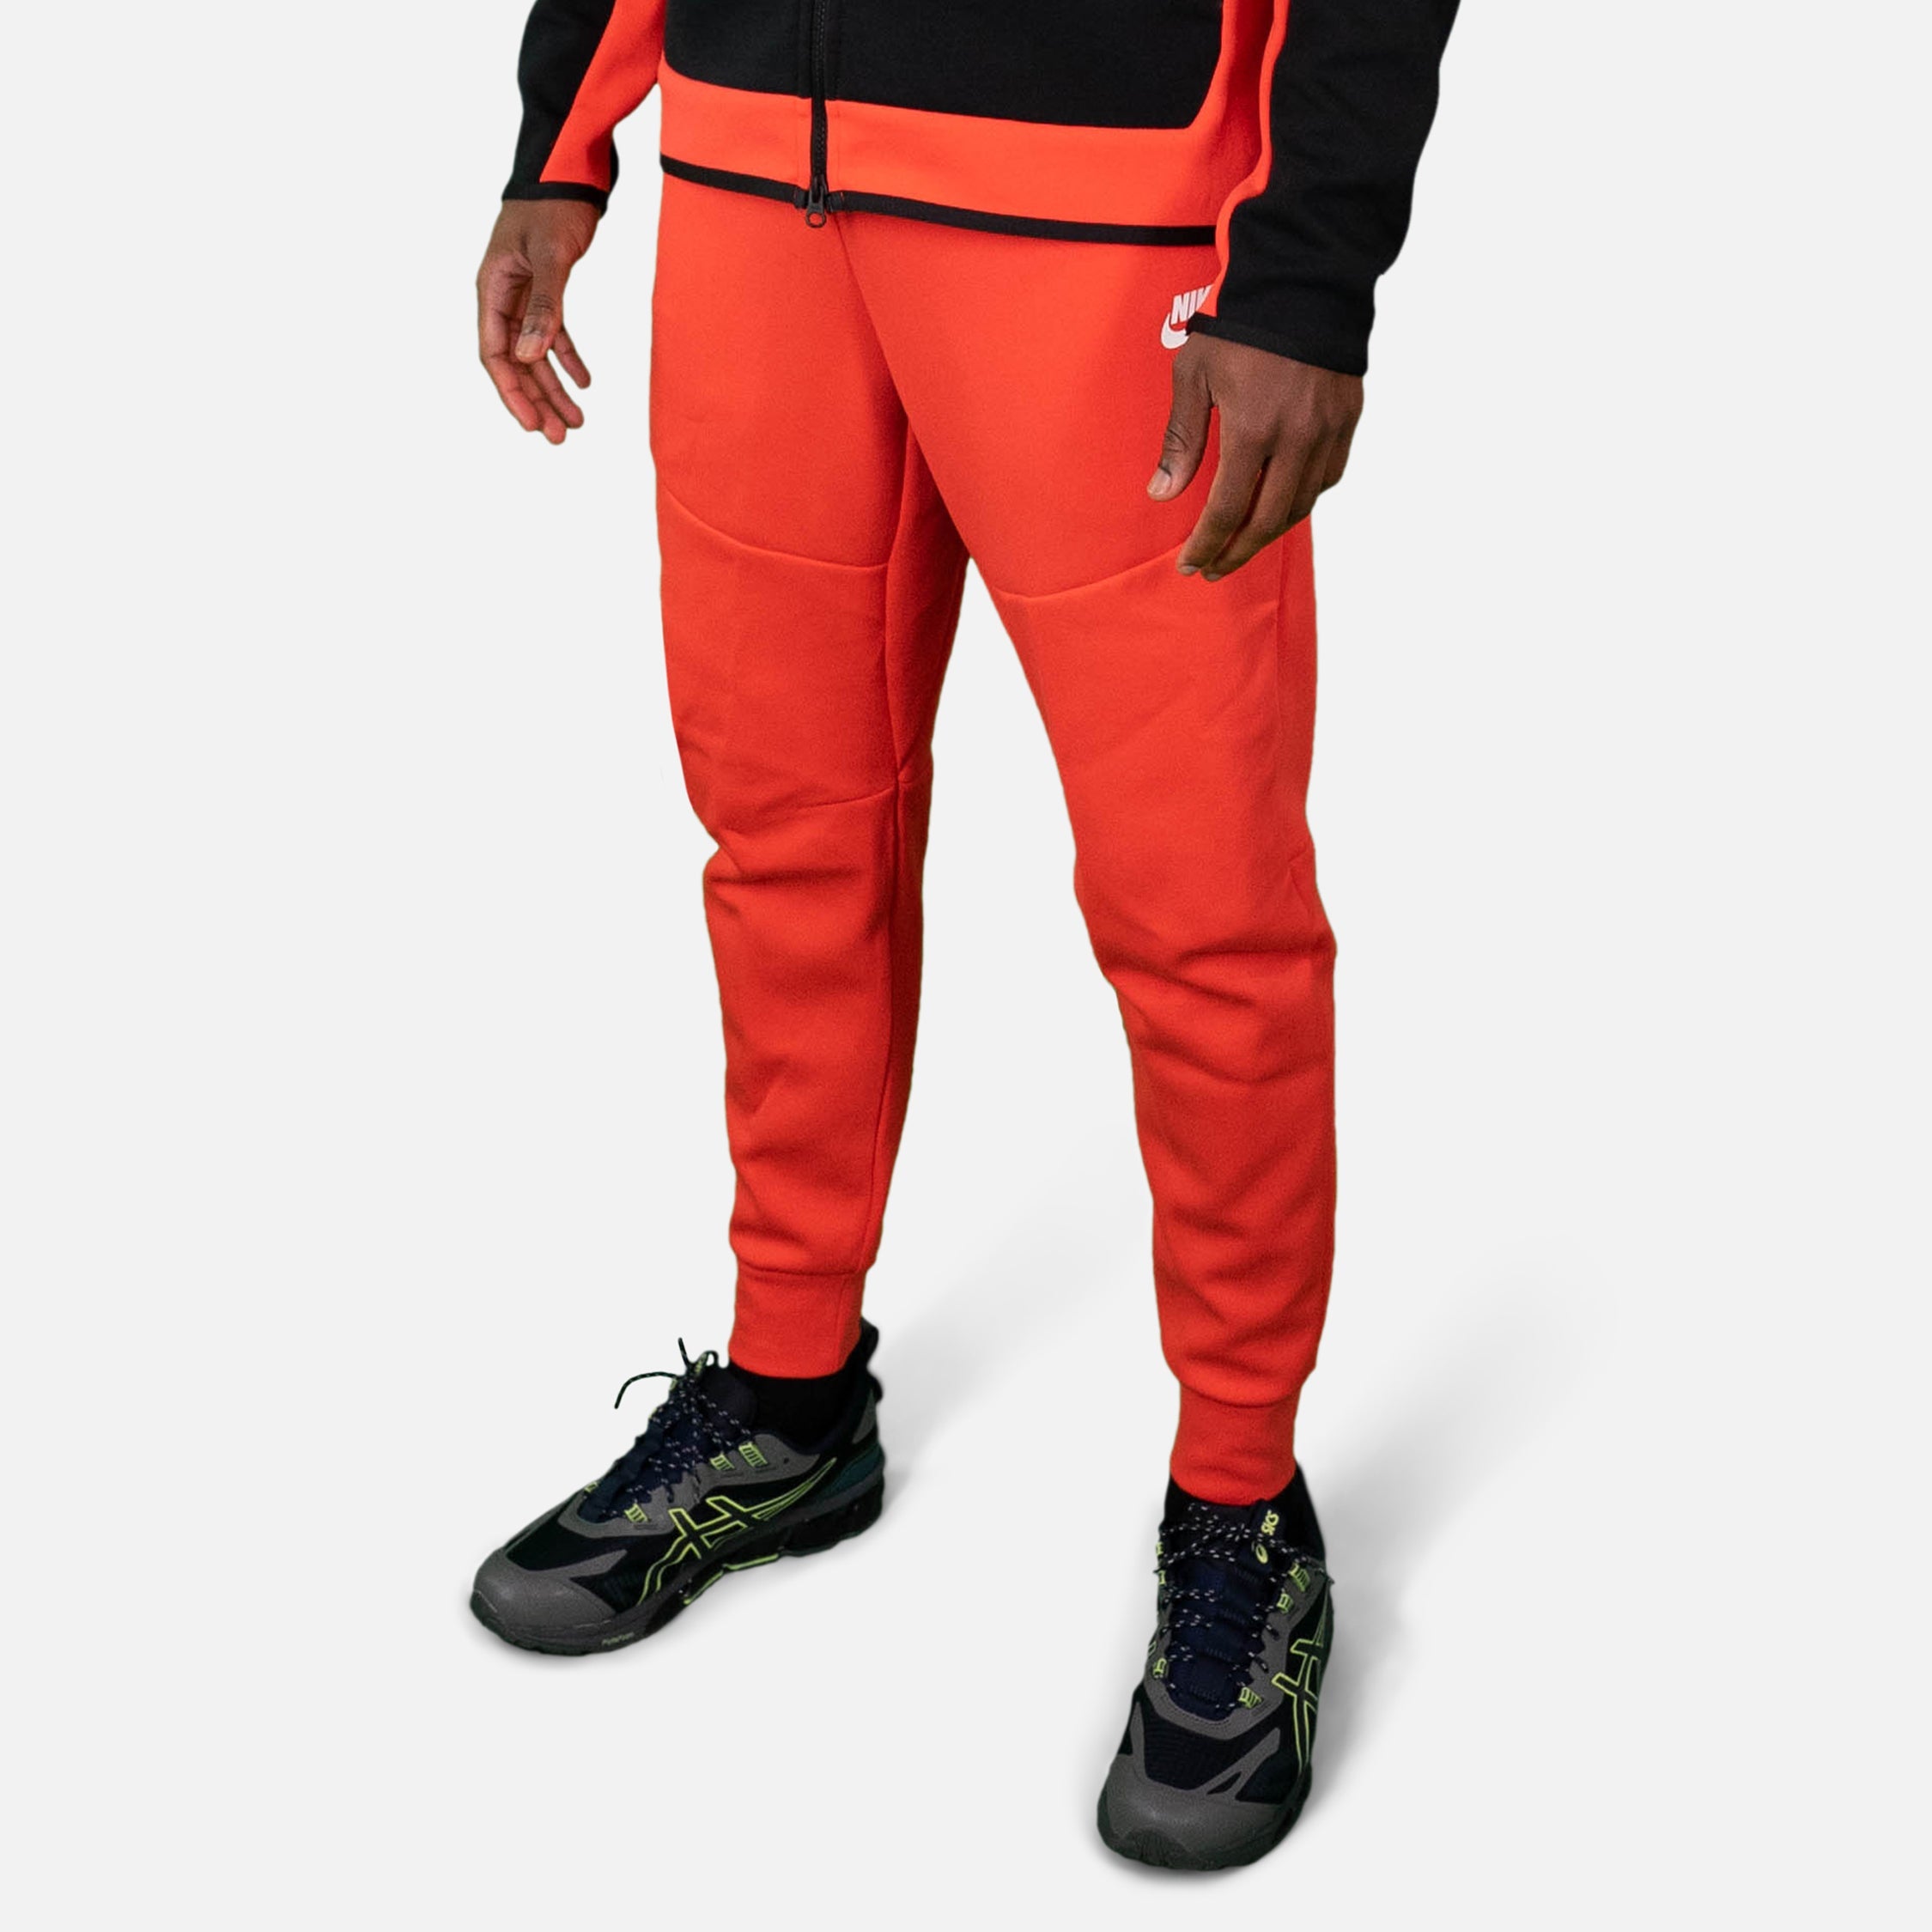 Hommes Meilleures ventes Pantalons de survêtement et joggers. Nike LU